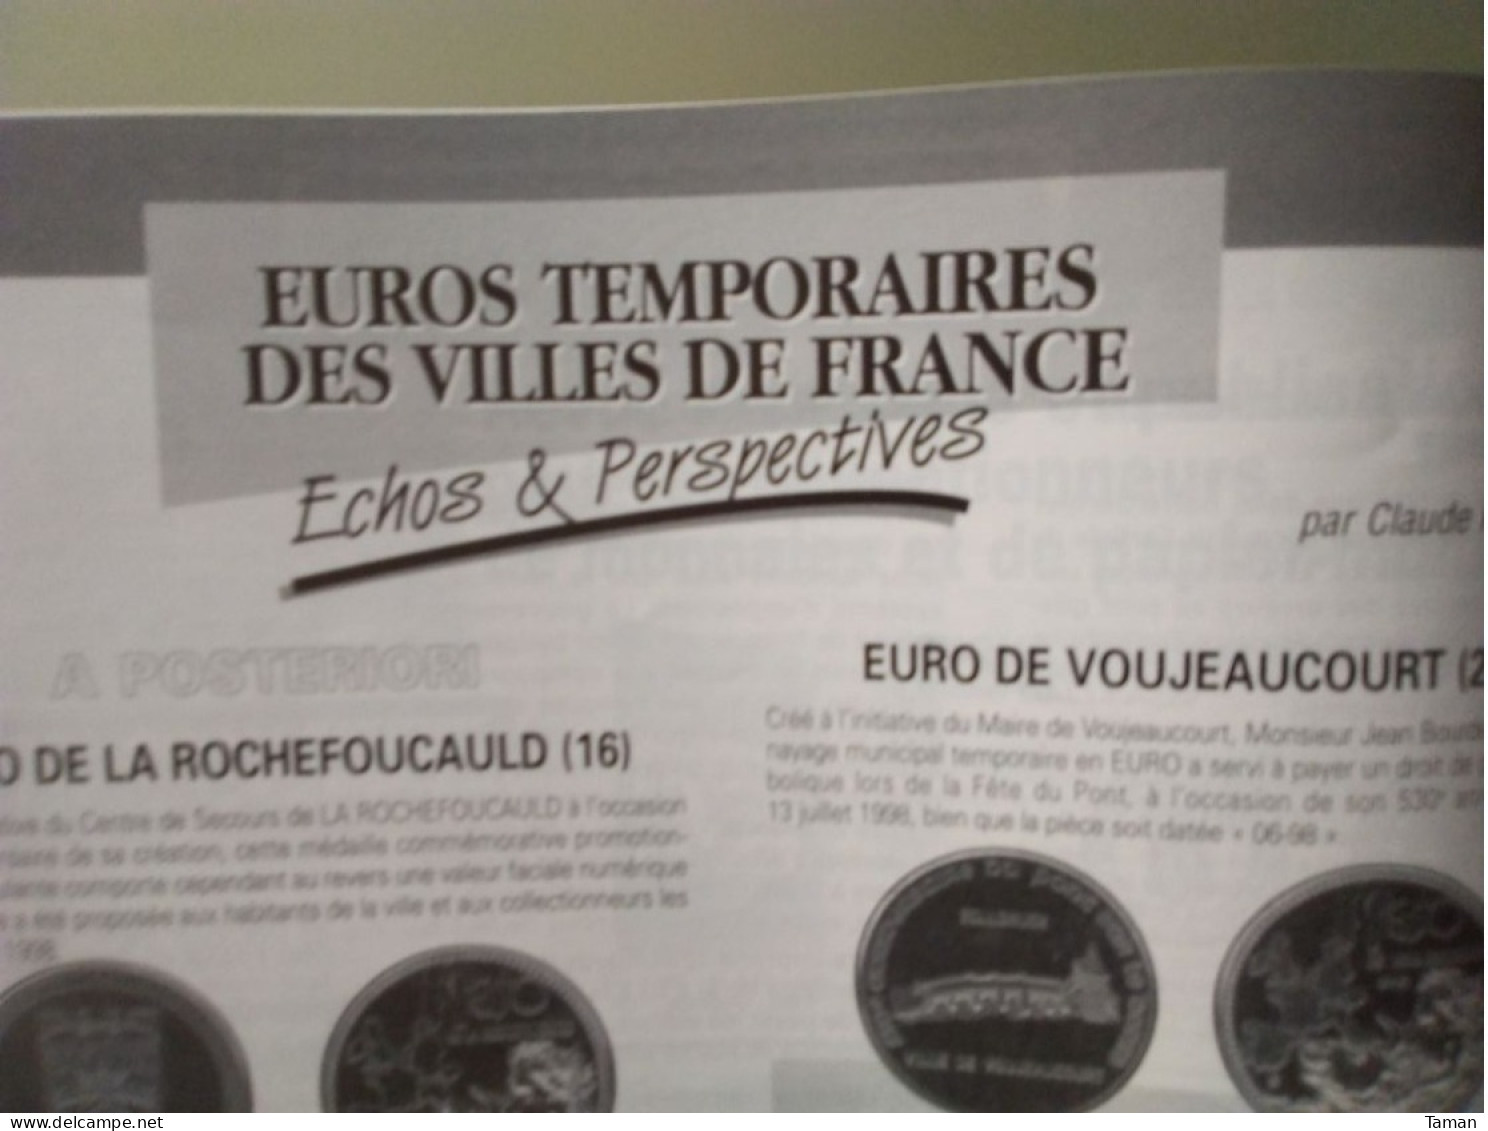 Numismatique & Change - Euros Temporaires - Ecu Union Et Force - Impression Des Billets Euro - French